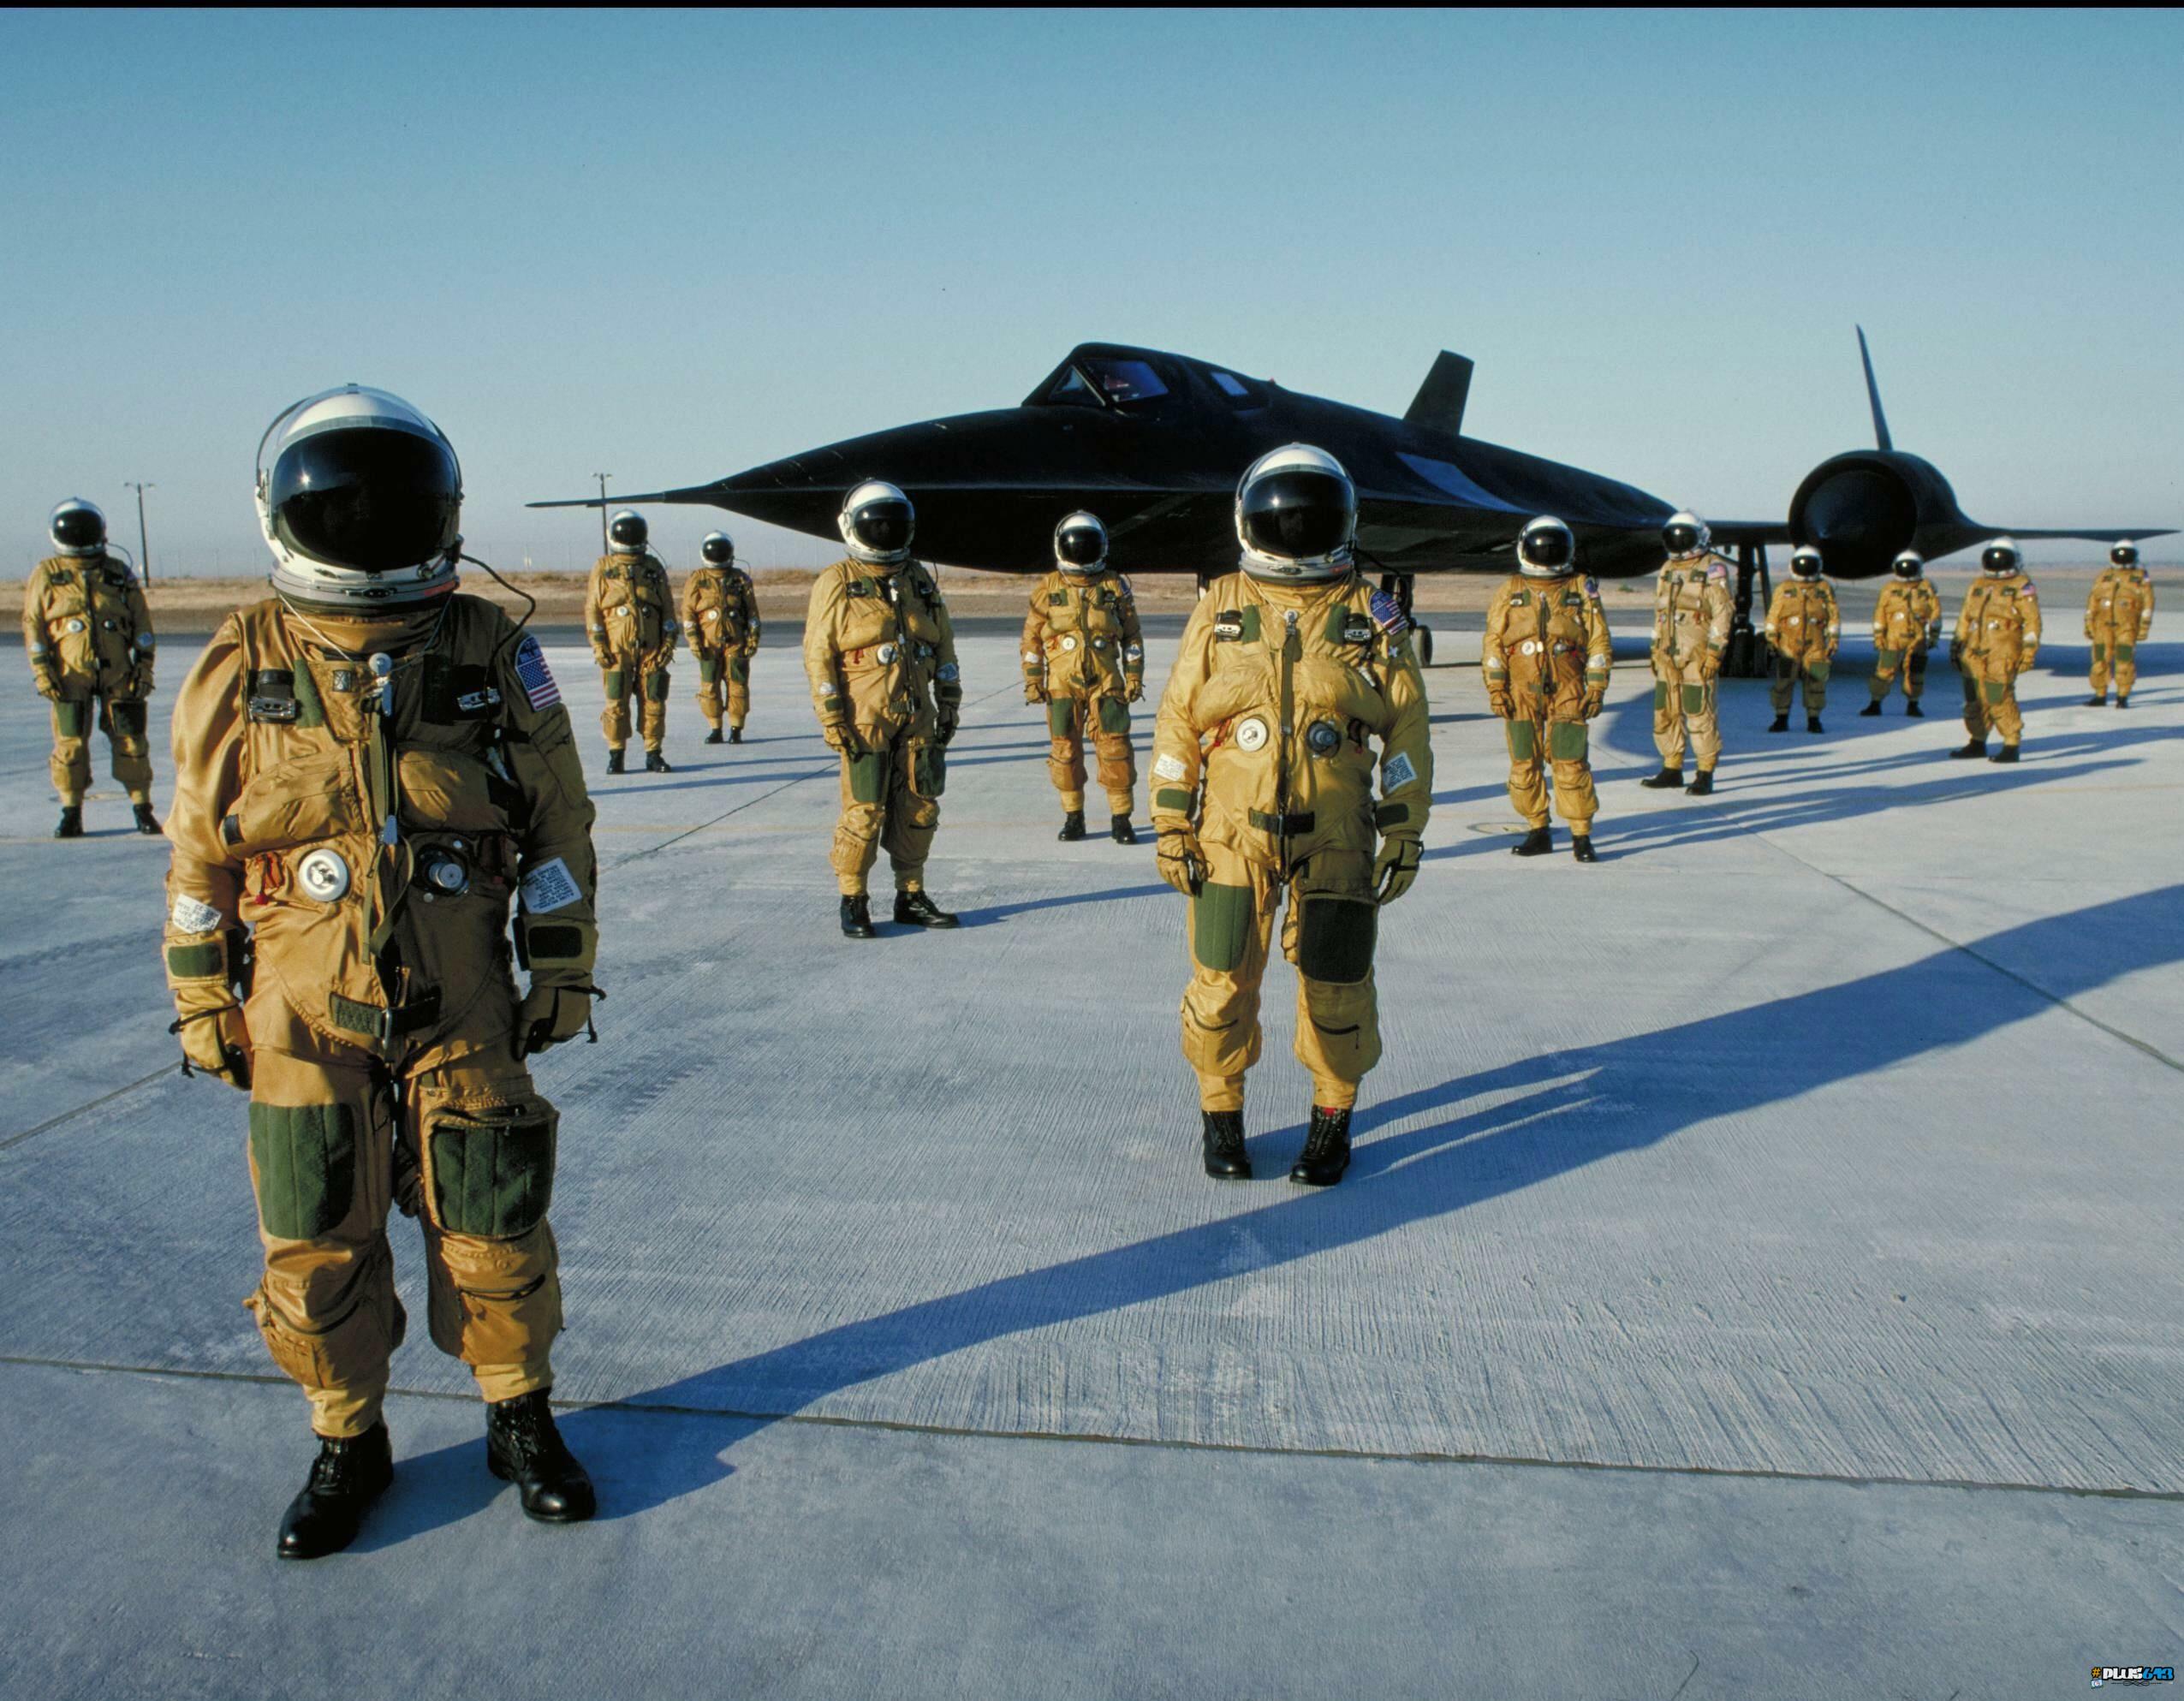 SR-71 crew in flight suits